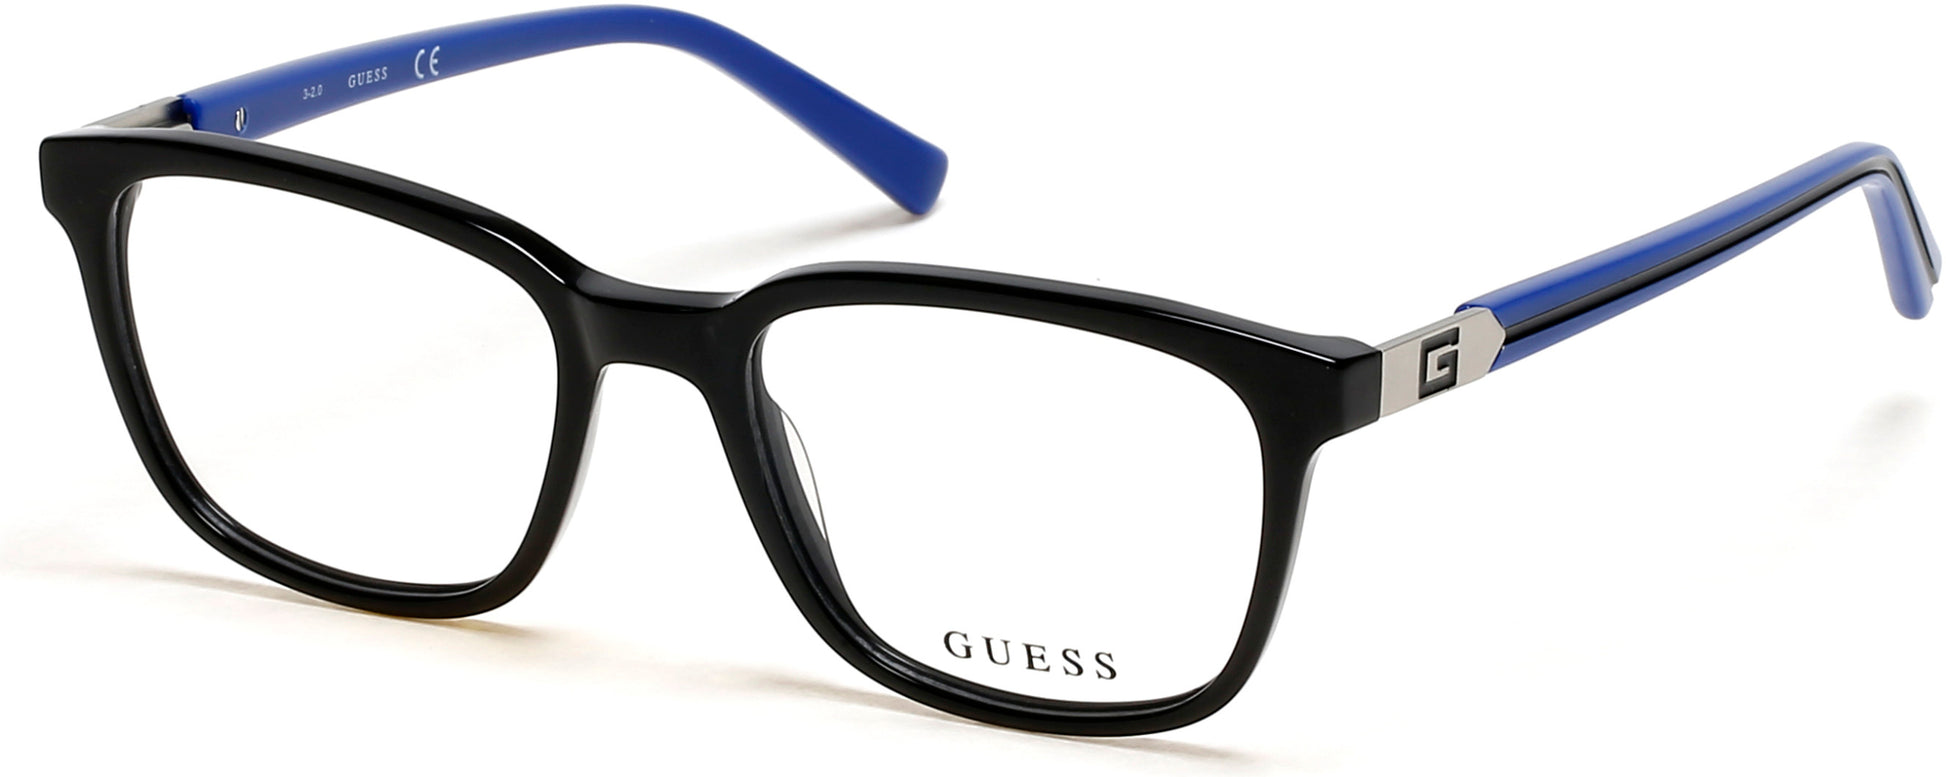 Guess GU9207 Square Eyeglasses 001-001 - Shiny Black